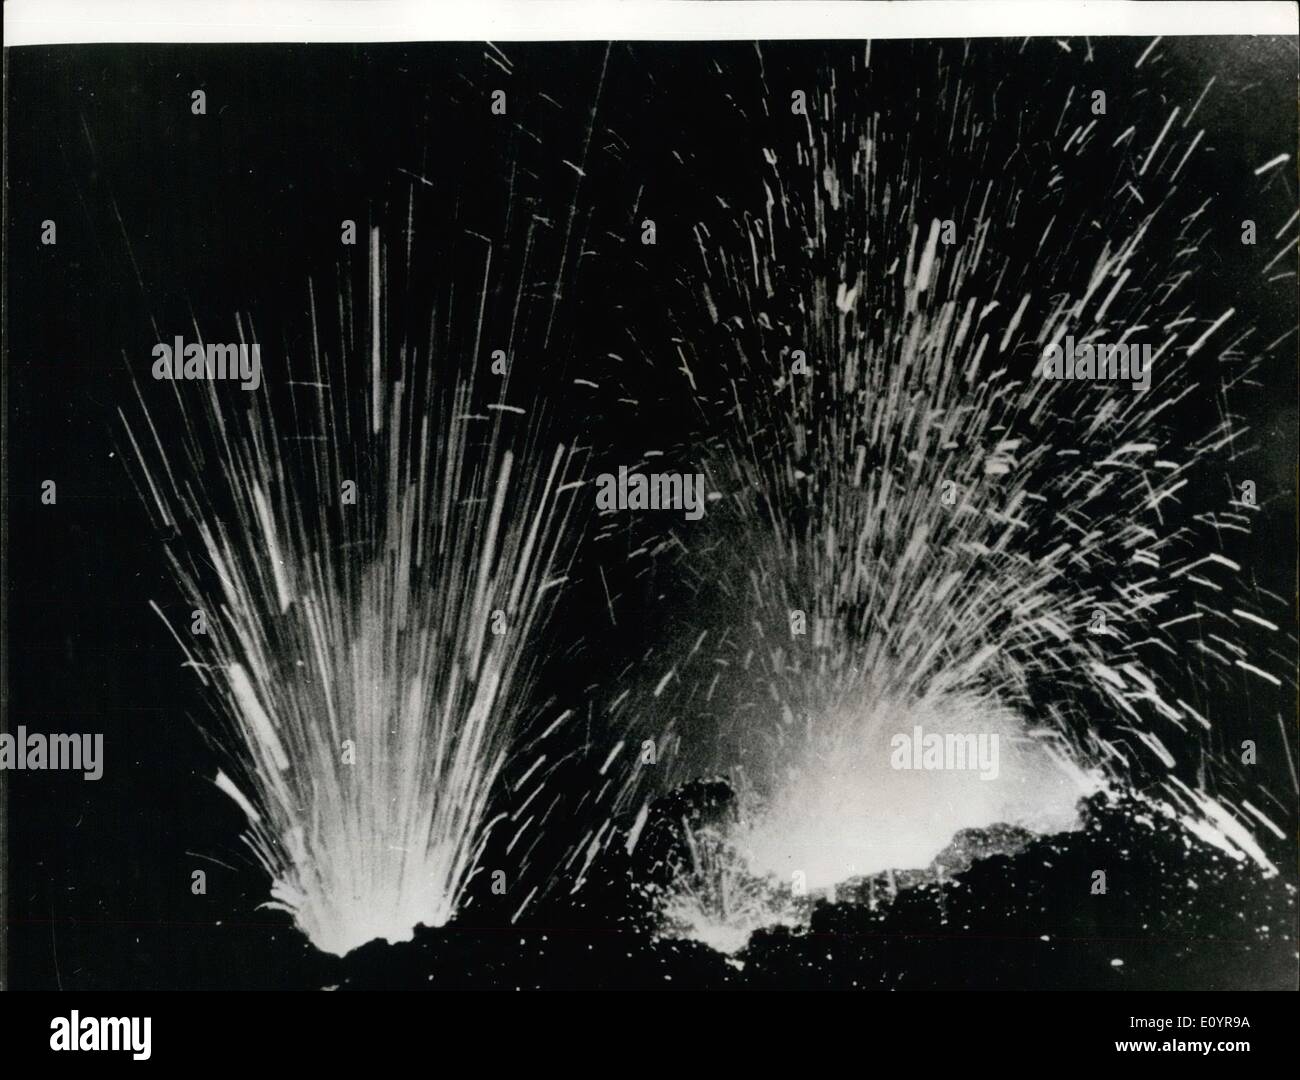 Apr. 04, 1971 - Etna erutta: Mostra fotografica spettacolare di questa foto è stata scattata durante il Monte Etna è più grande eruzione dal 1950. Esplosioni ogni pochi minuti scagliò massi fuso nell'aria dai Crateri in eruzione del vulcano. Foto Stock